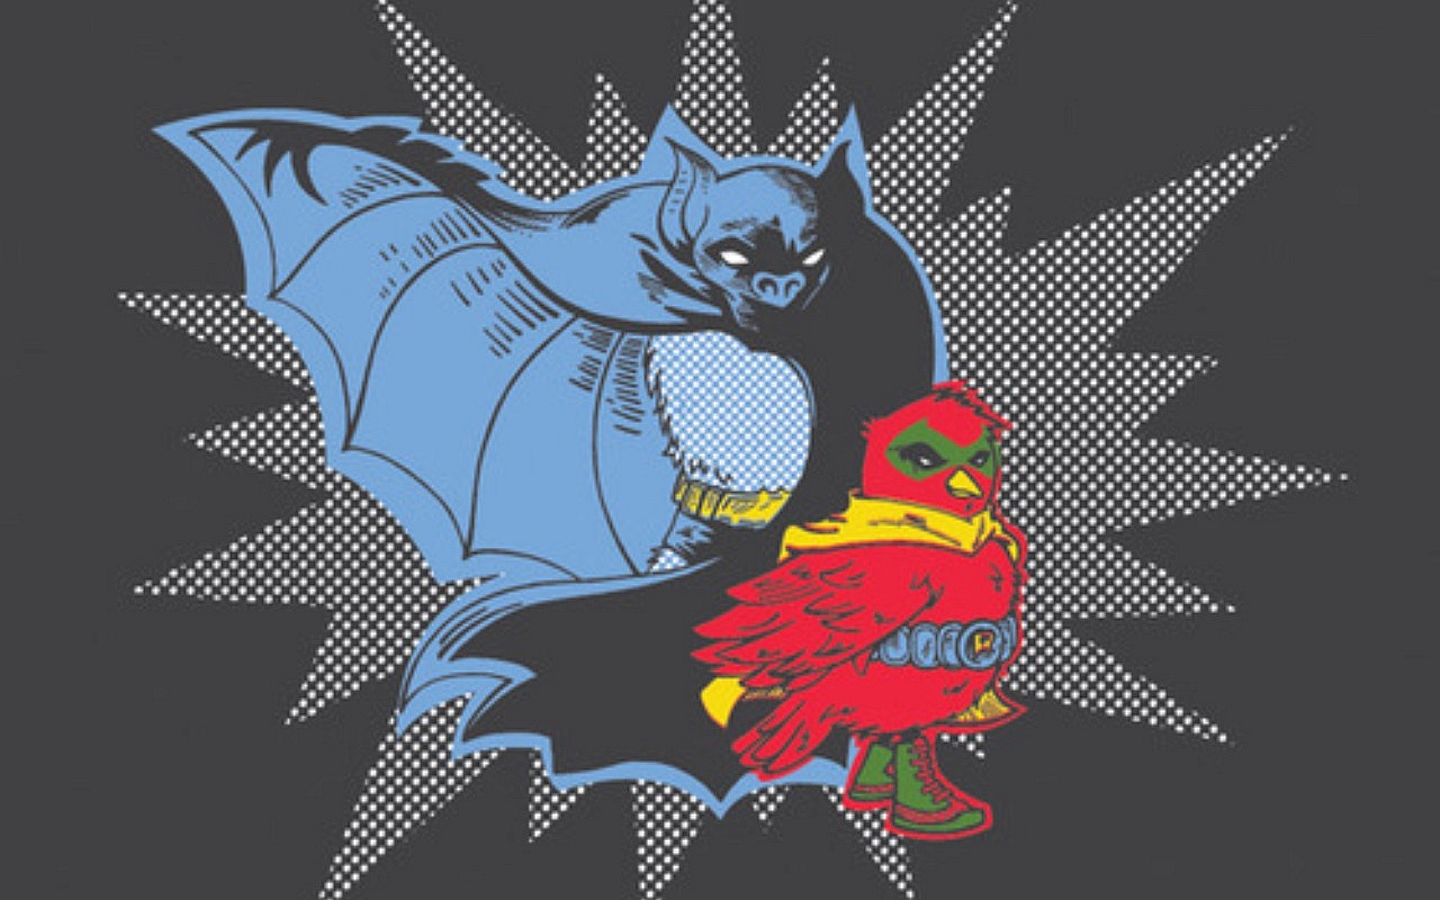 Скачать обои бесплатно Комиксы, Бэтмен, Робин (Комиксы Dc), Бэтмен И Робин картинка на рабочий стол ПК